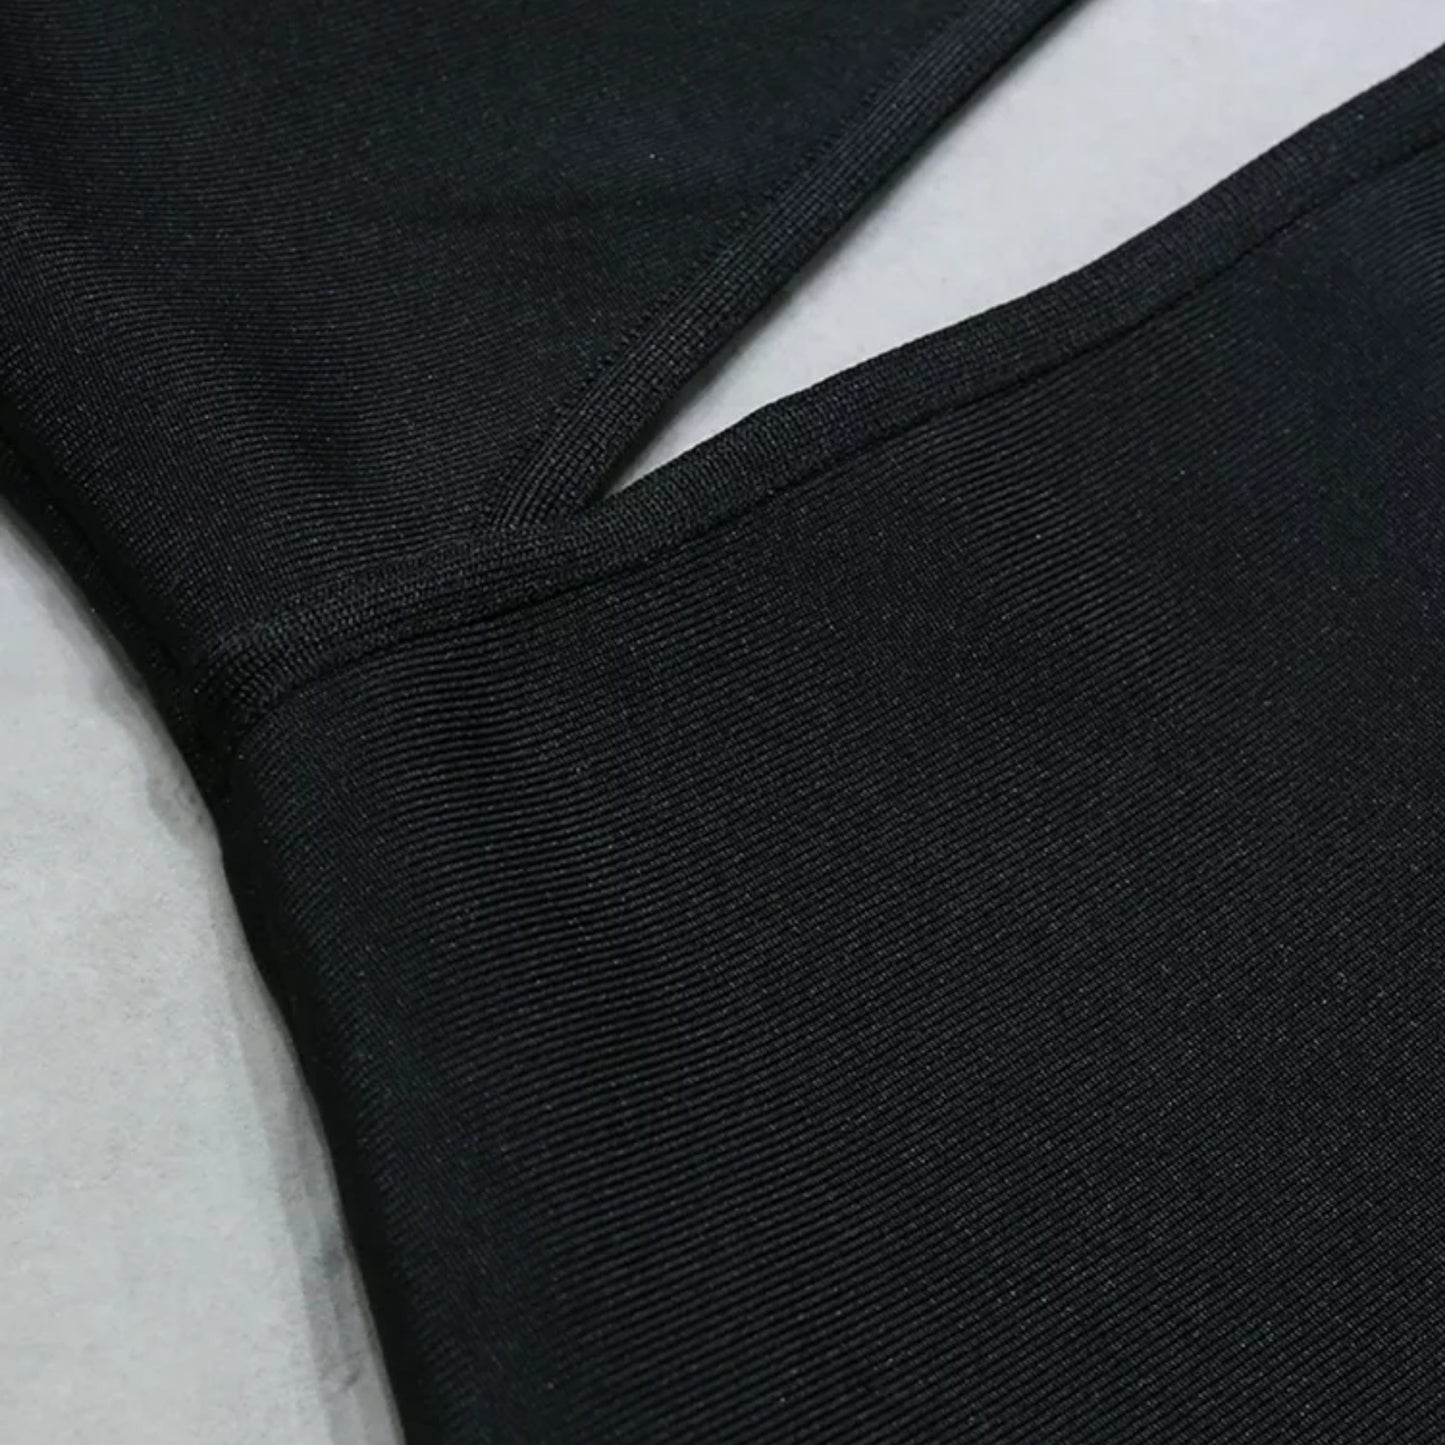 One Shoulder Cutout Ruffle Dress Zhuofei Clothes Co., Ltd.